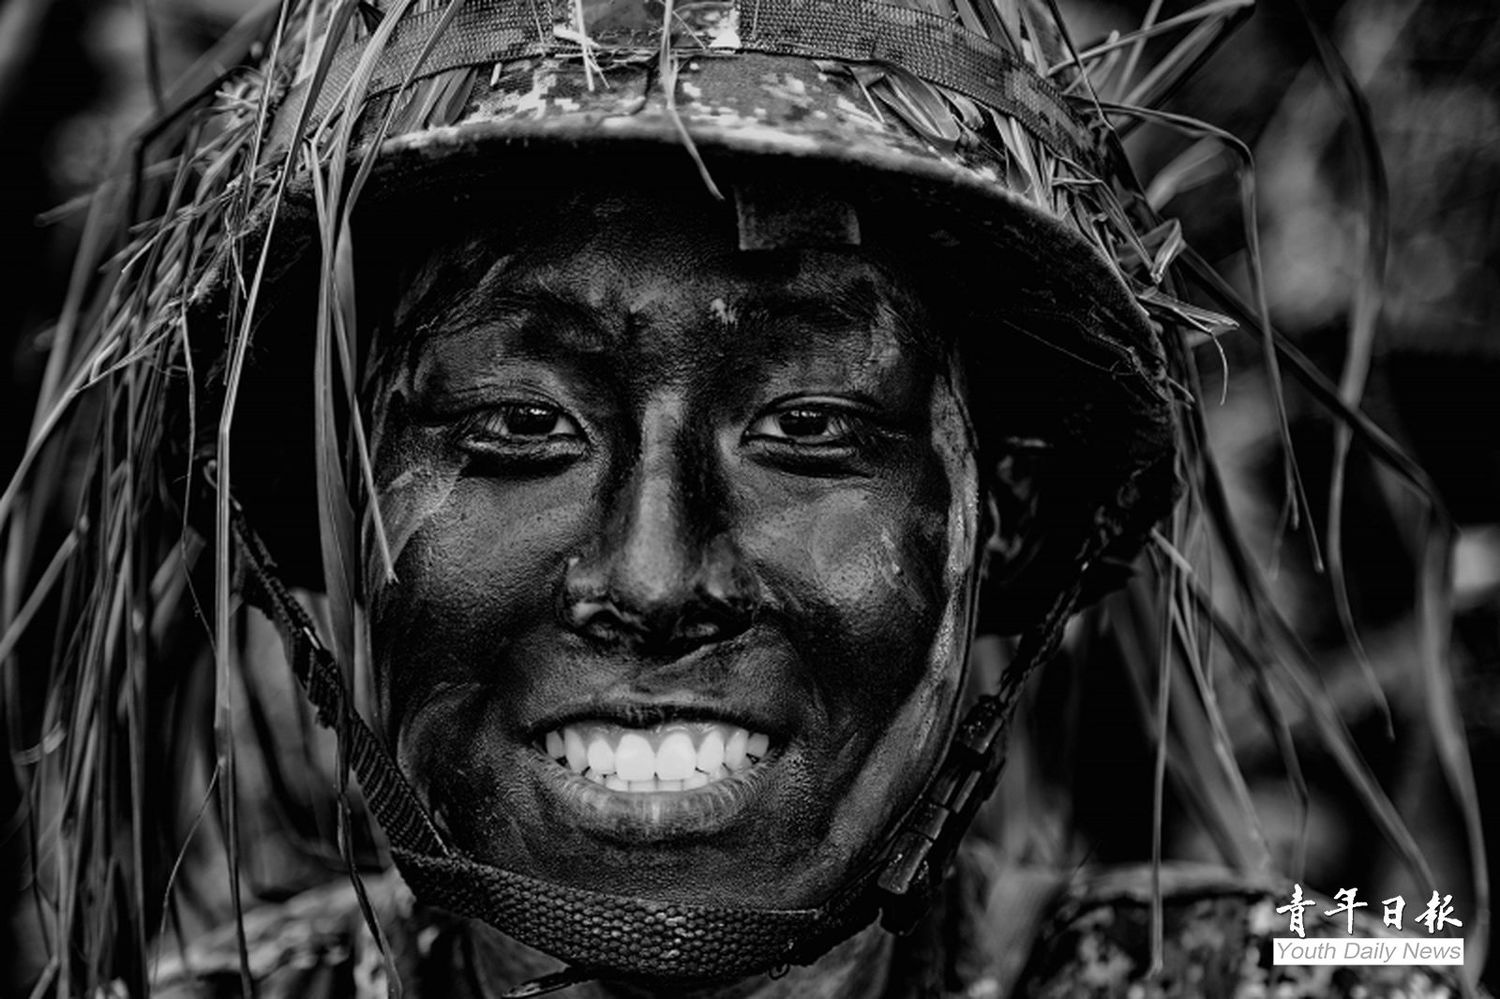 黃一翔作品「Soldier Smile」是1位正在接受入伍訓的軍校生，露出一抹笑容，面對艱苦訓練，用正面能量去克服挑戰。   圖：取自青年日報